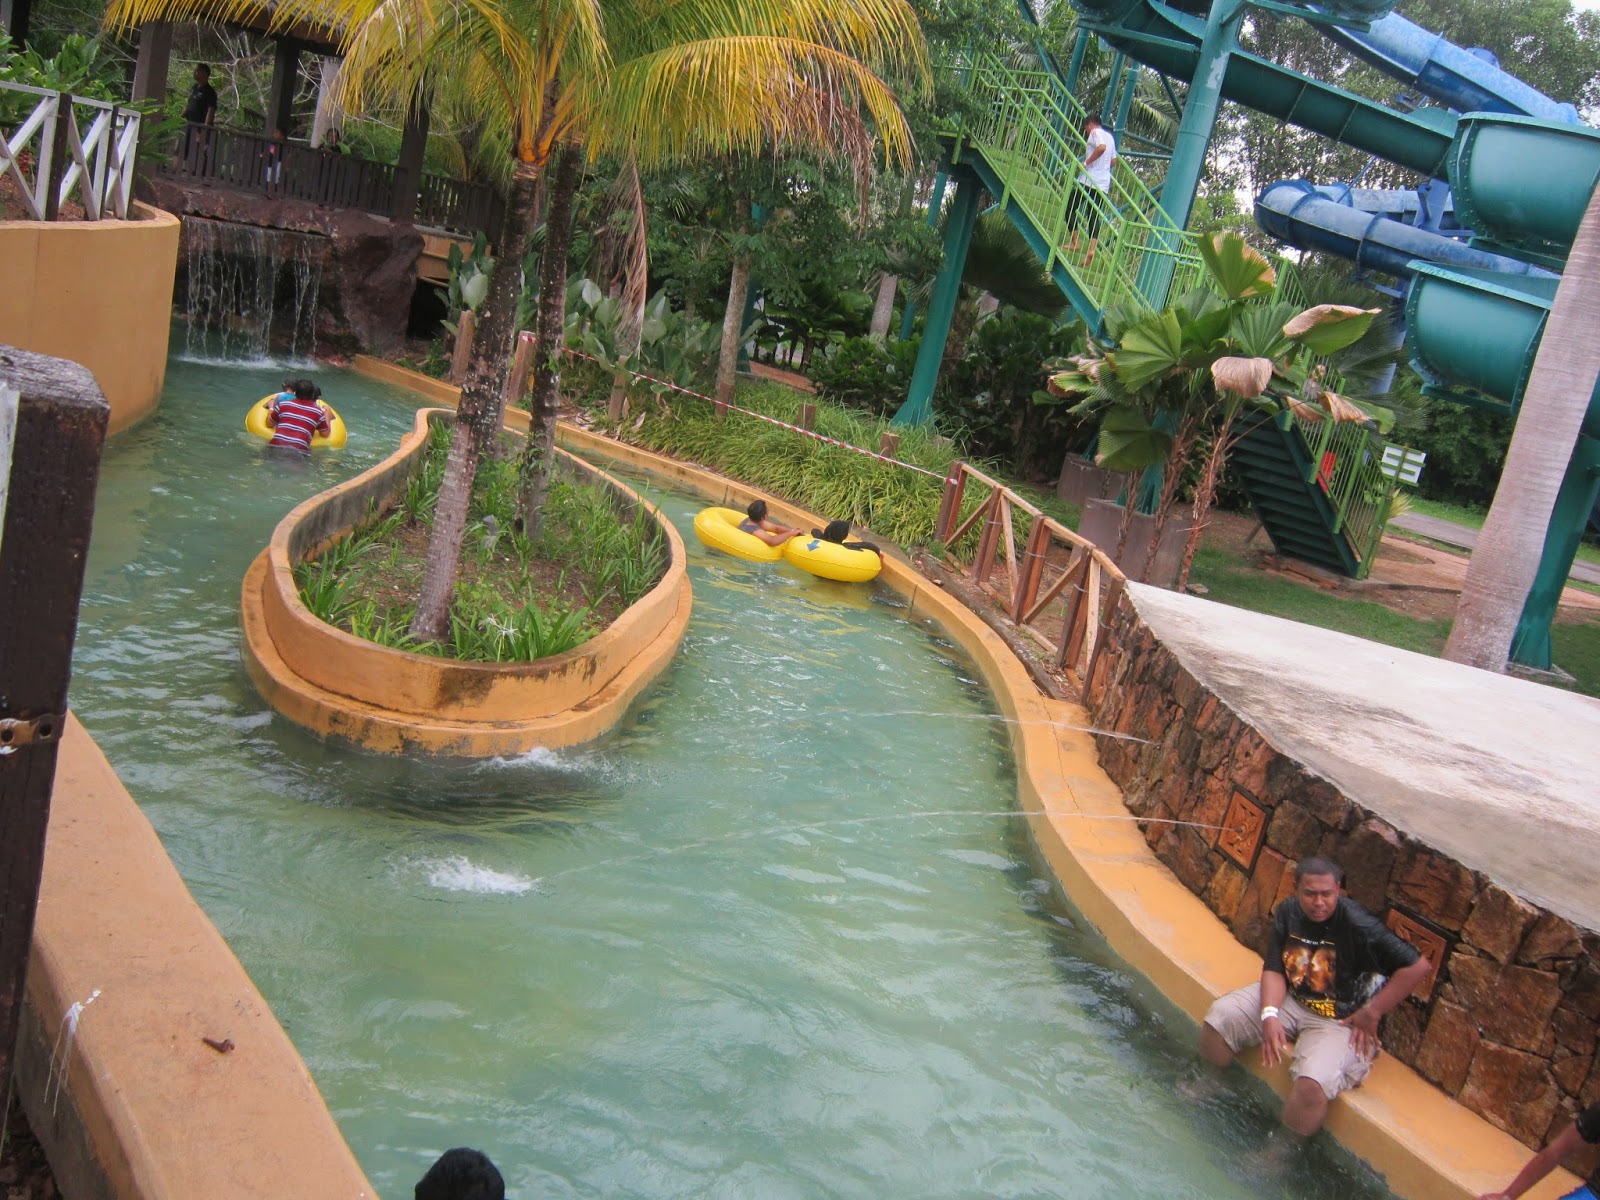 The Carnival Waterpark Sungai Petani